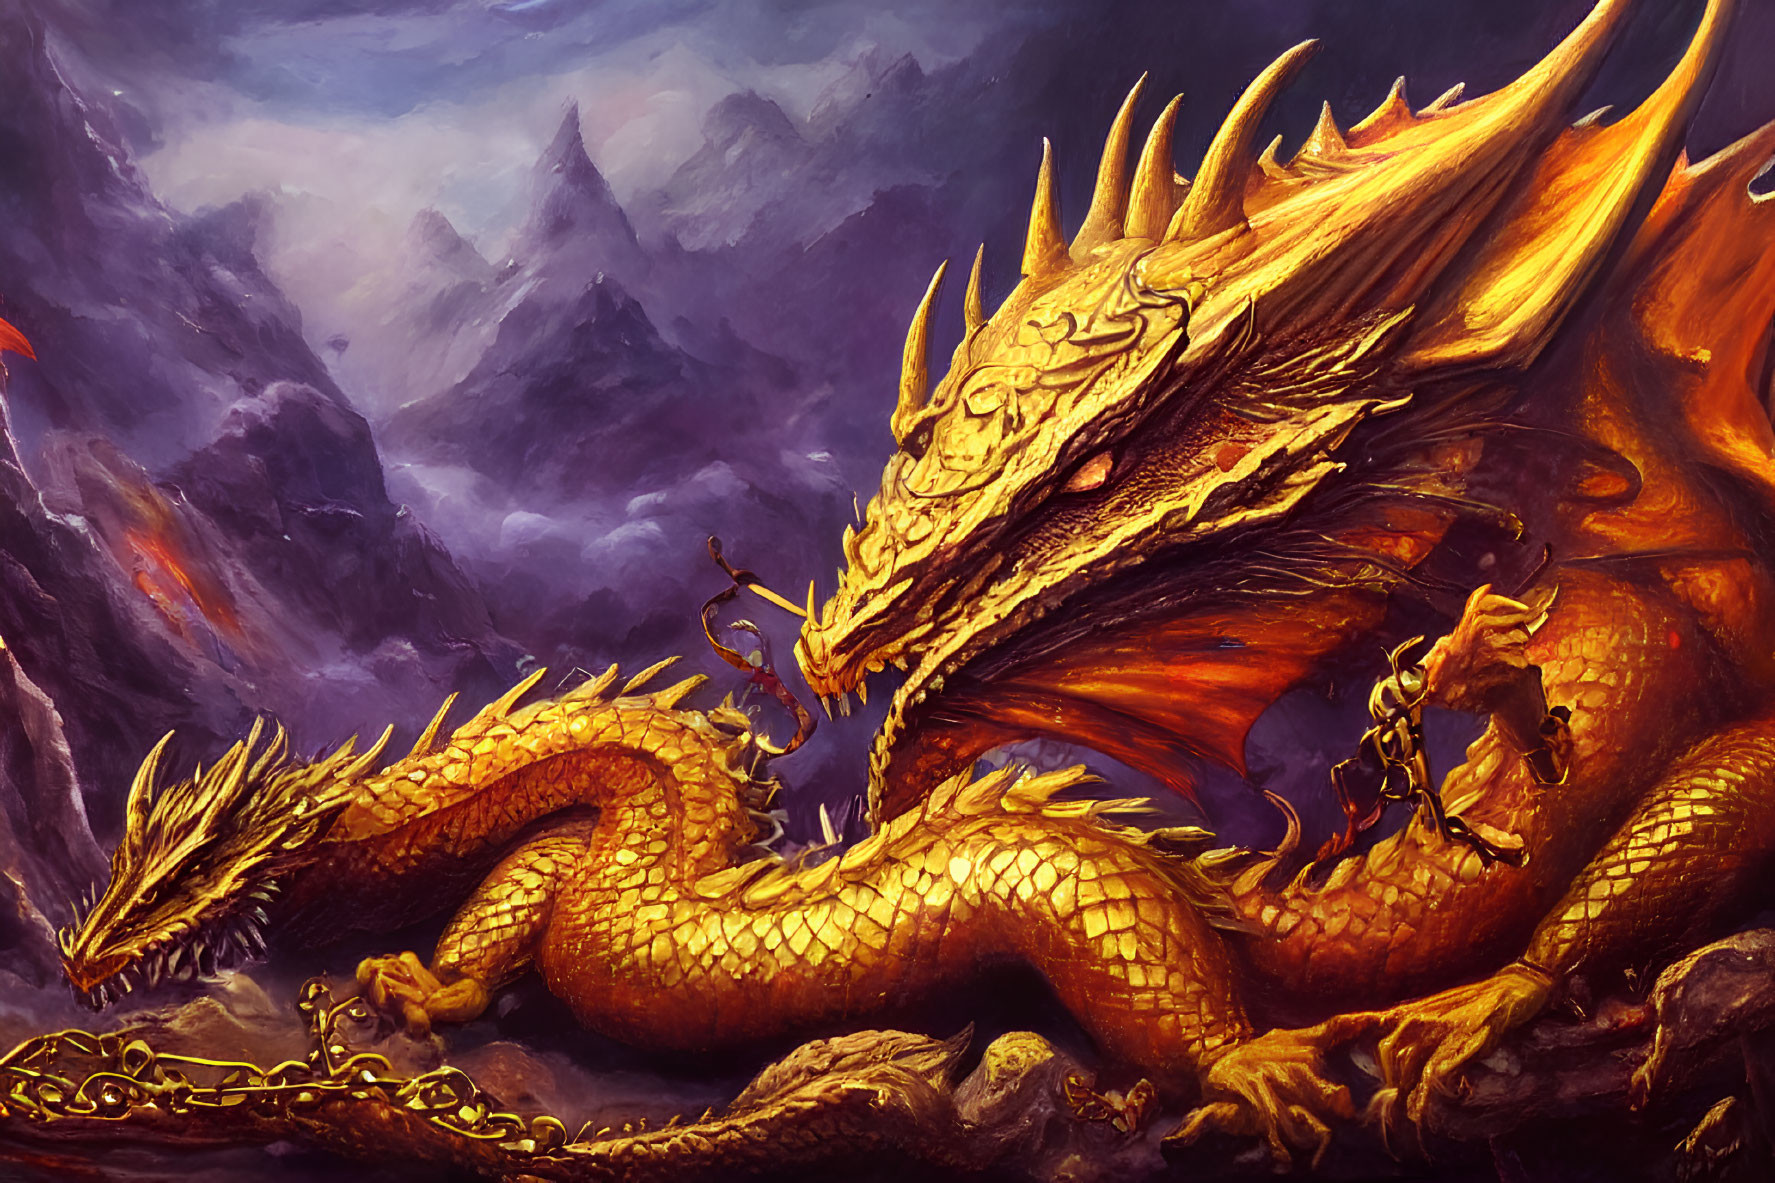 Golden multi-headed dragon with glowing eyes on rocky terrain